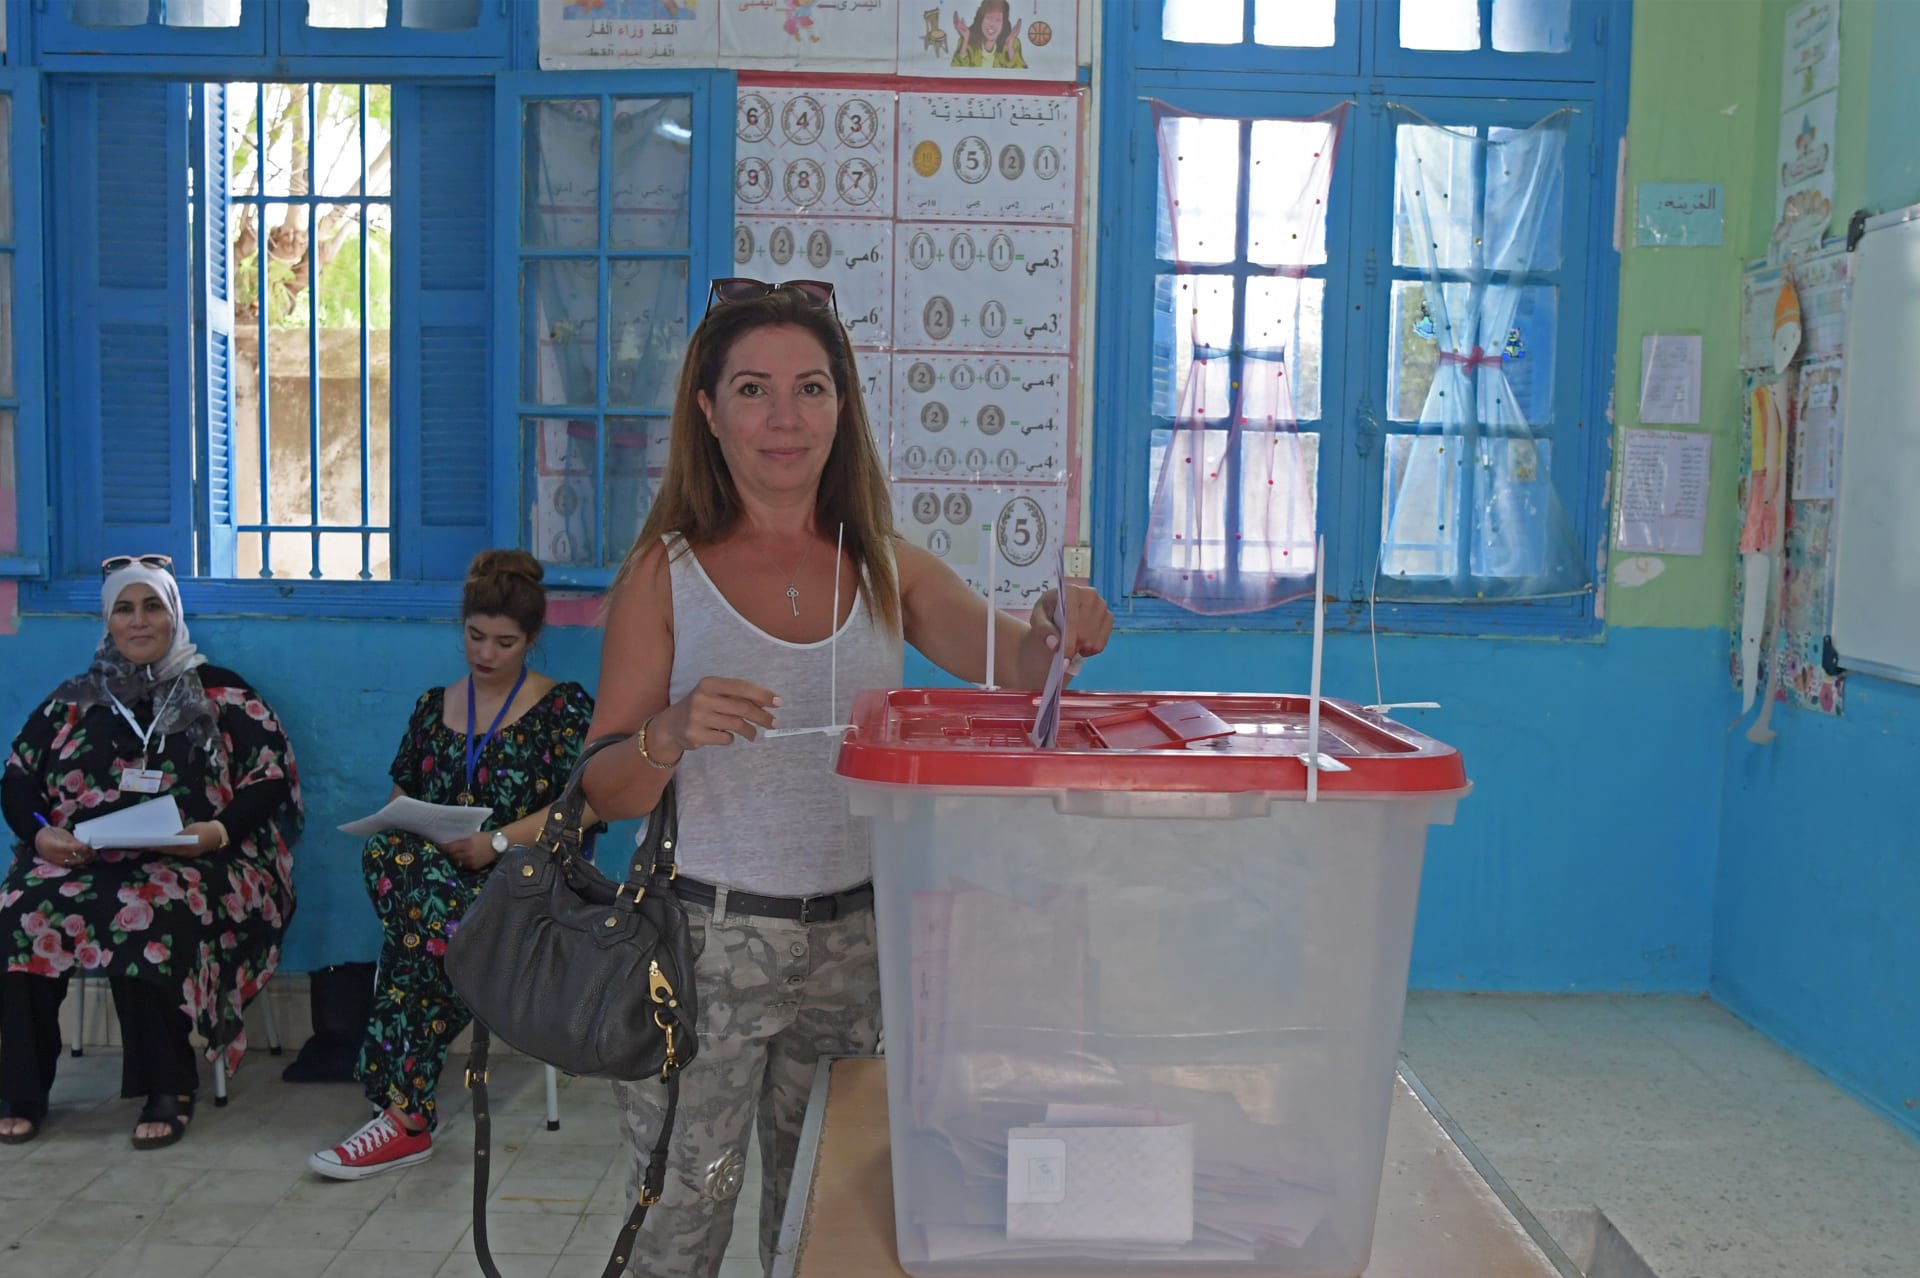 بالصور.. التونسيون يدلون بأصواتهم لاختيار رئيس جديد للبلاد 